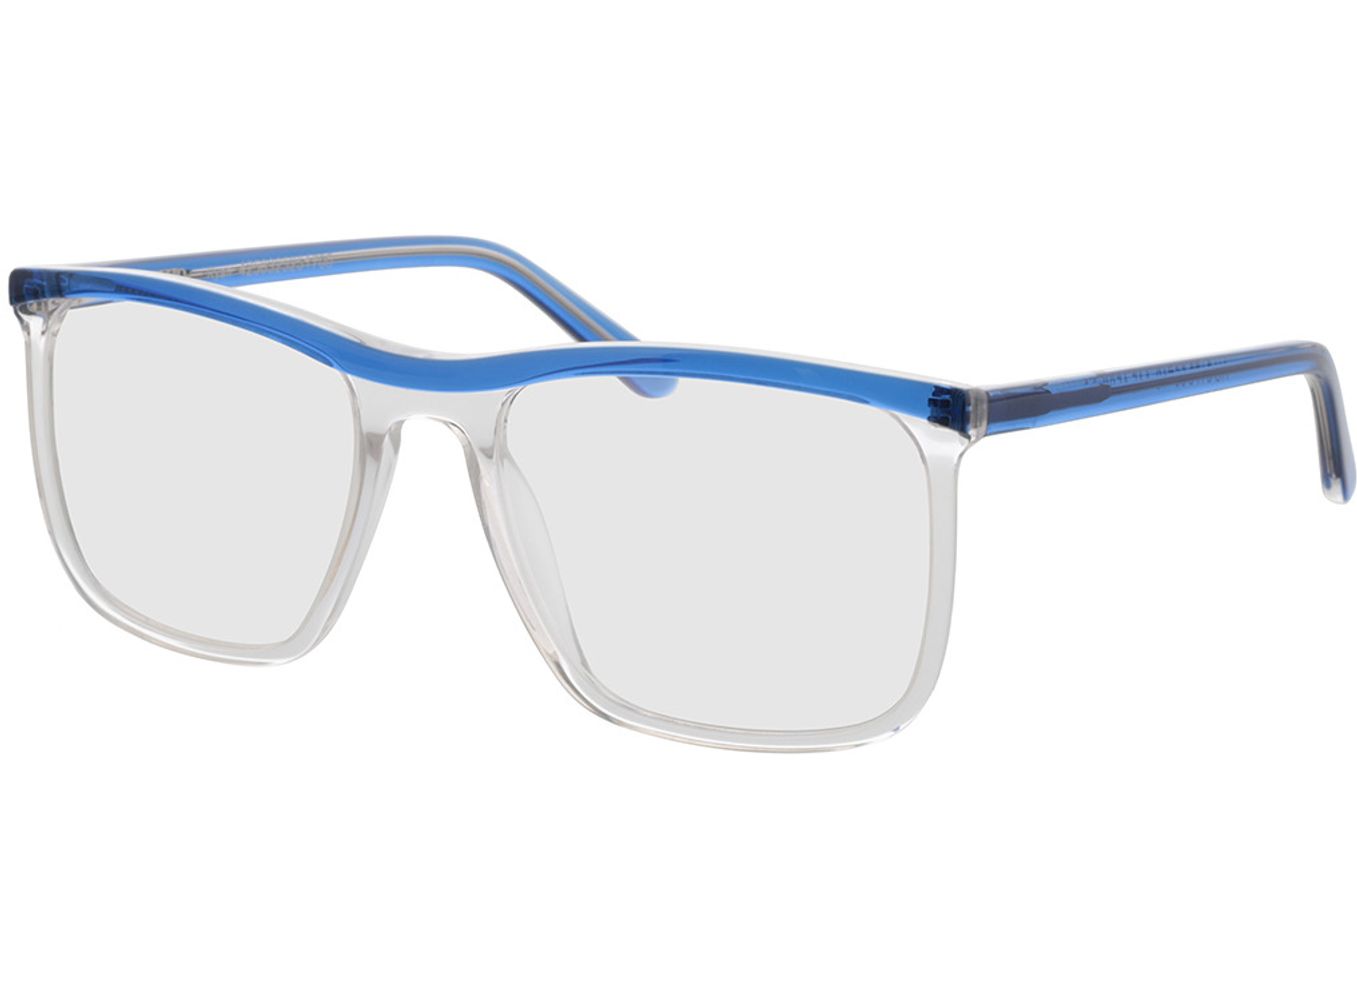 Ryan - blau/transparent Brillengestell inkl. Gläser, Vollrand, browline von Brille24 Collection